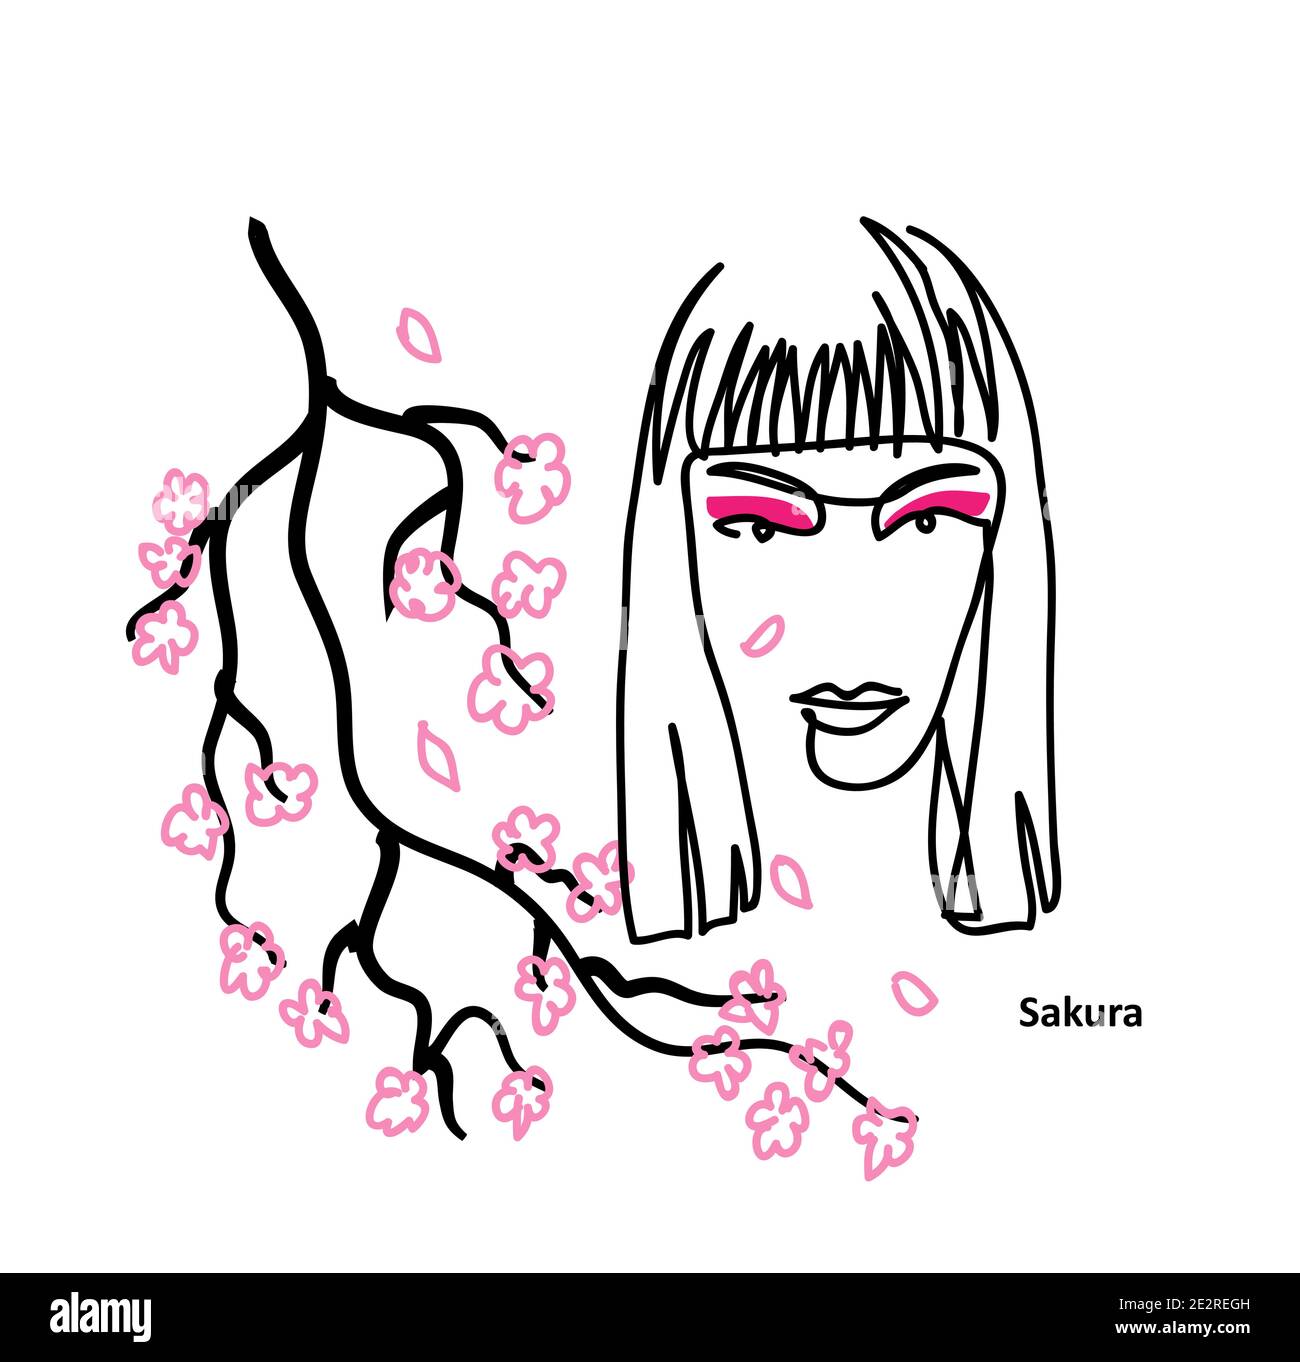 Poster vettoriale promozionale semplice con ombreggiatura degli occhi. Bella ragazza con trucco rosa, ombretto. Sakura fiorisce Illustrazione Vettoriale